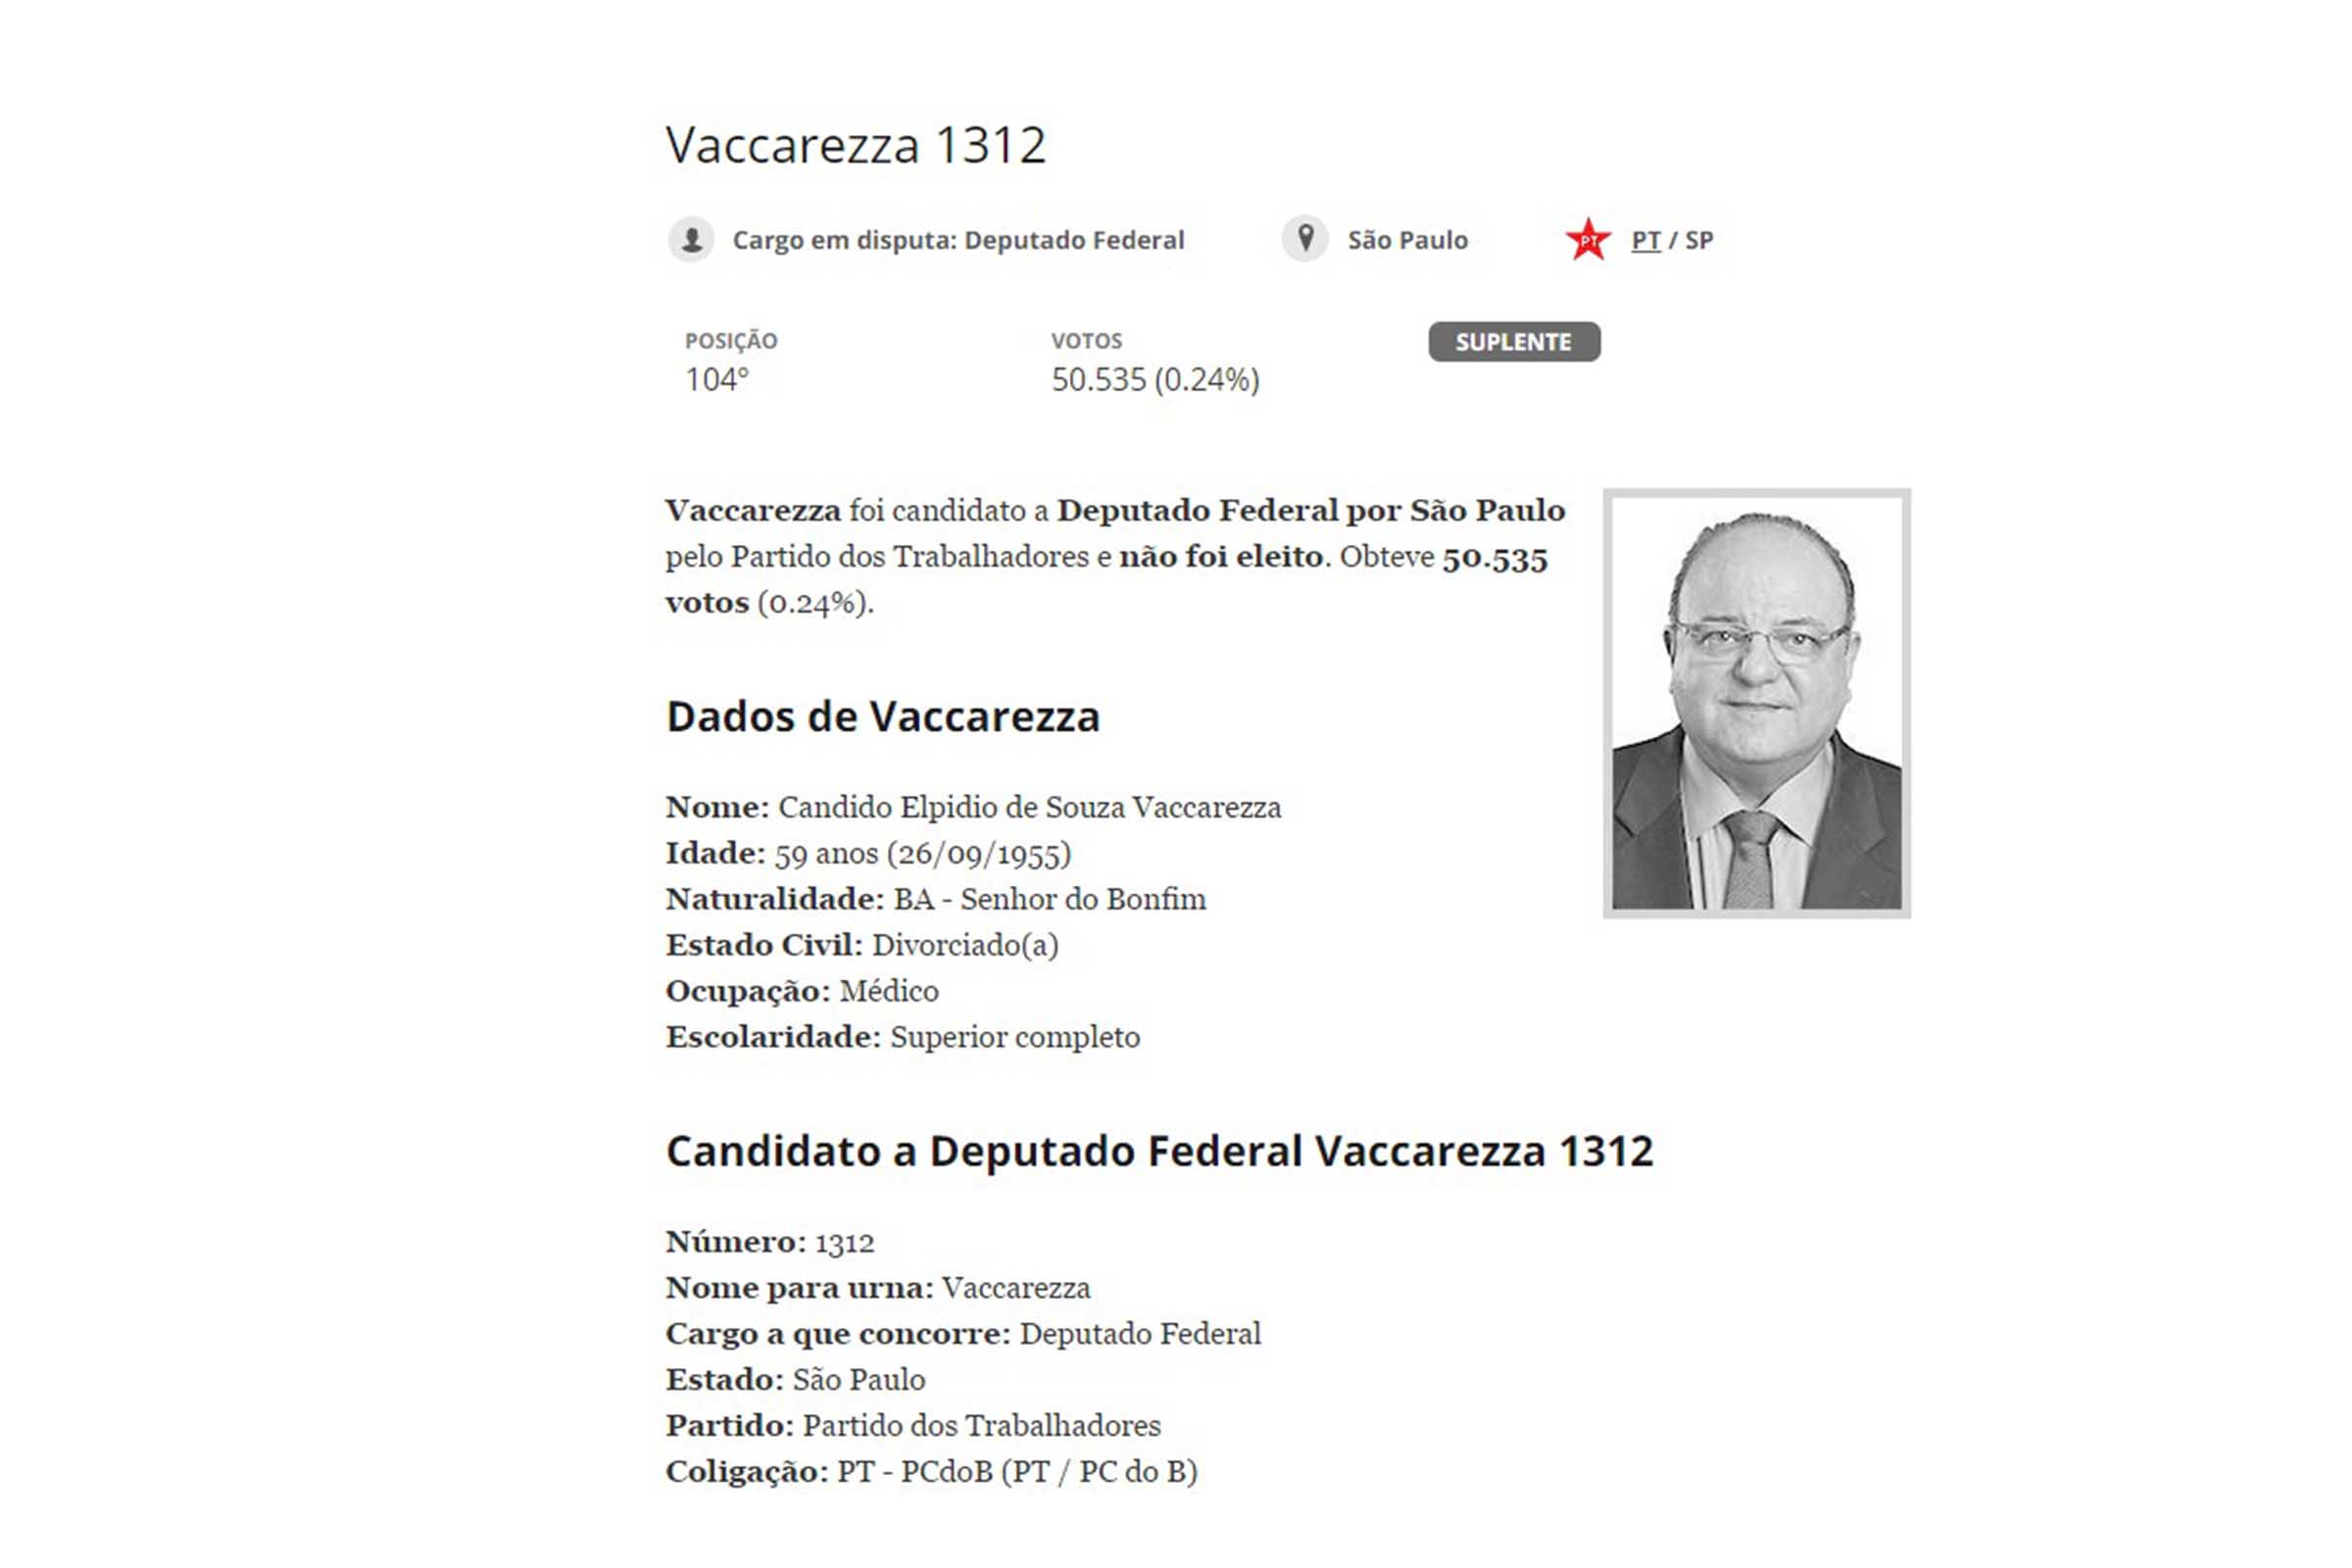 Cândido Elpidio de Souza Vaccarezza responde a inquérito na Justiça Federal por possível envolvimento em atos de corrupção.